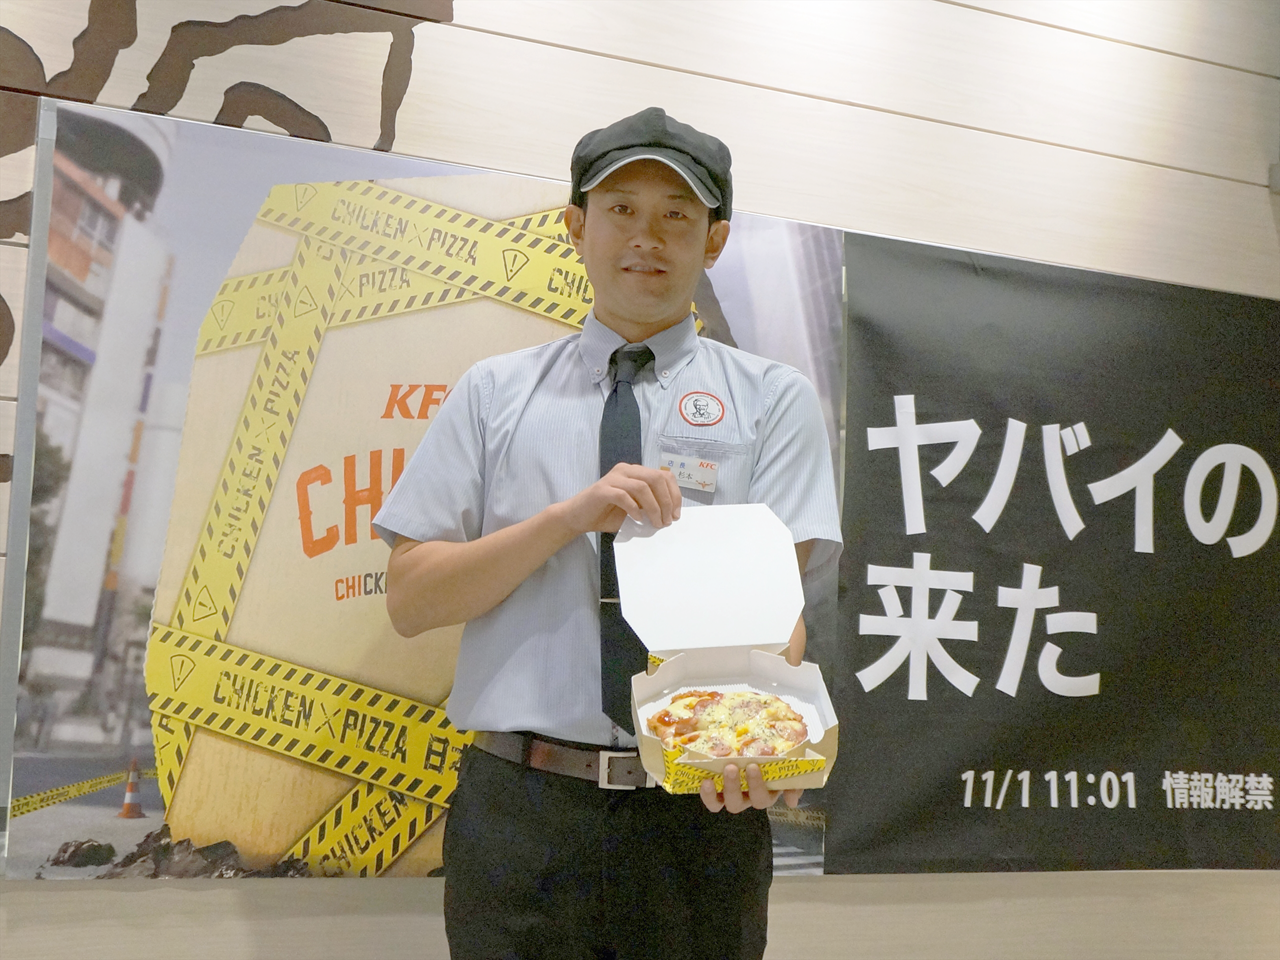 カウントダウンに合わせ「CHIZZA」の箱をオープンしてお披露目するKFC東京ドームラクーア店の杉本直哉店長